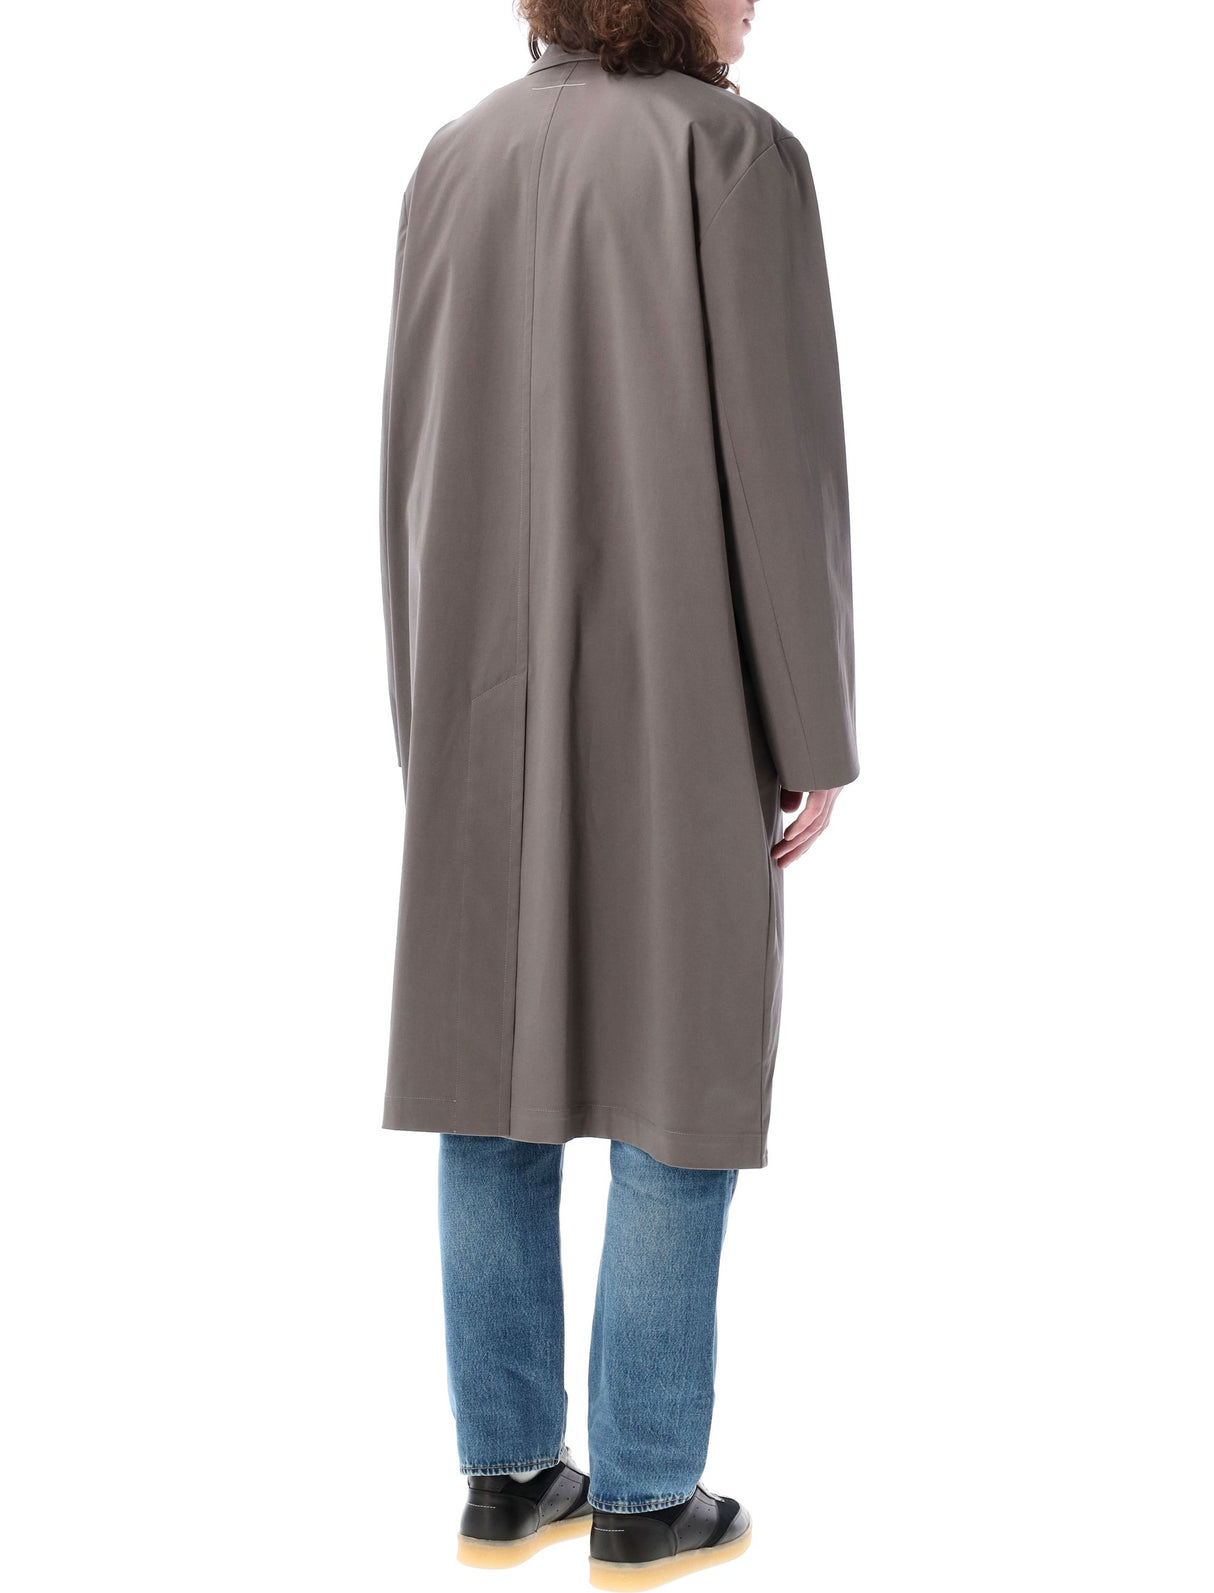 Áo khoác dày bằng vải bông màu nâu xám cho nam giới - bộ sưu tập hiện nay